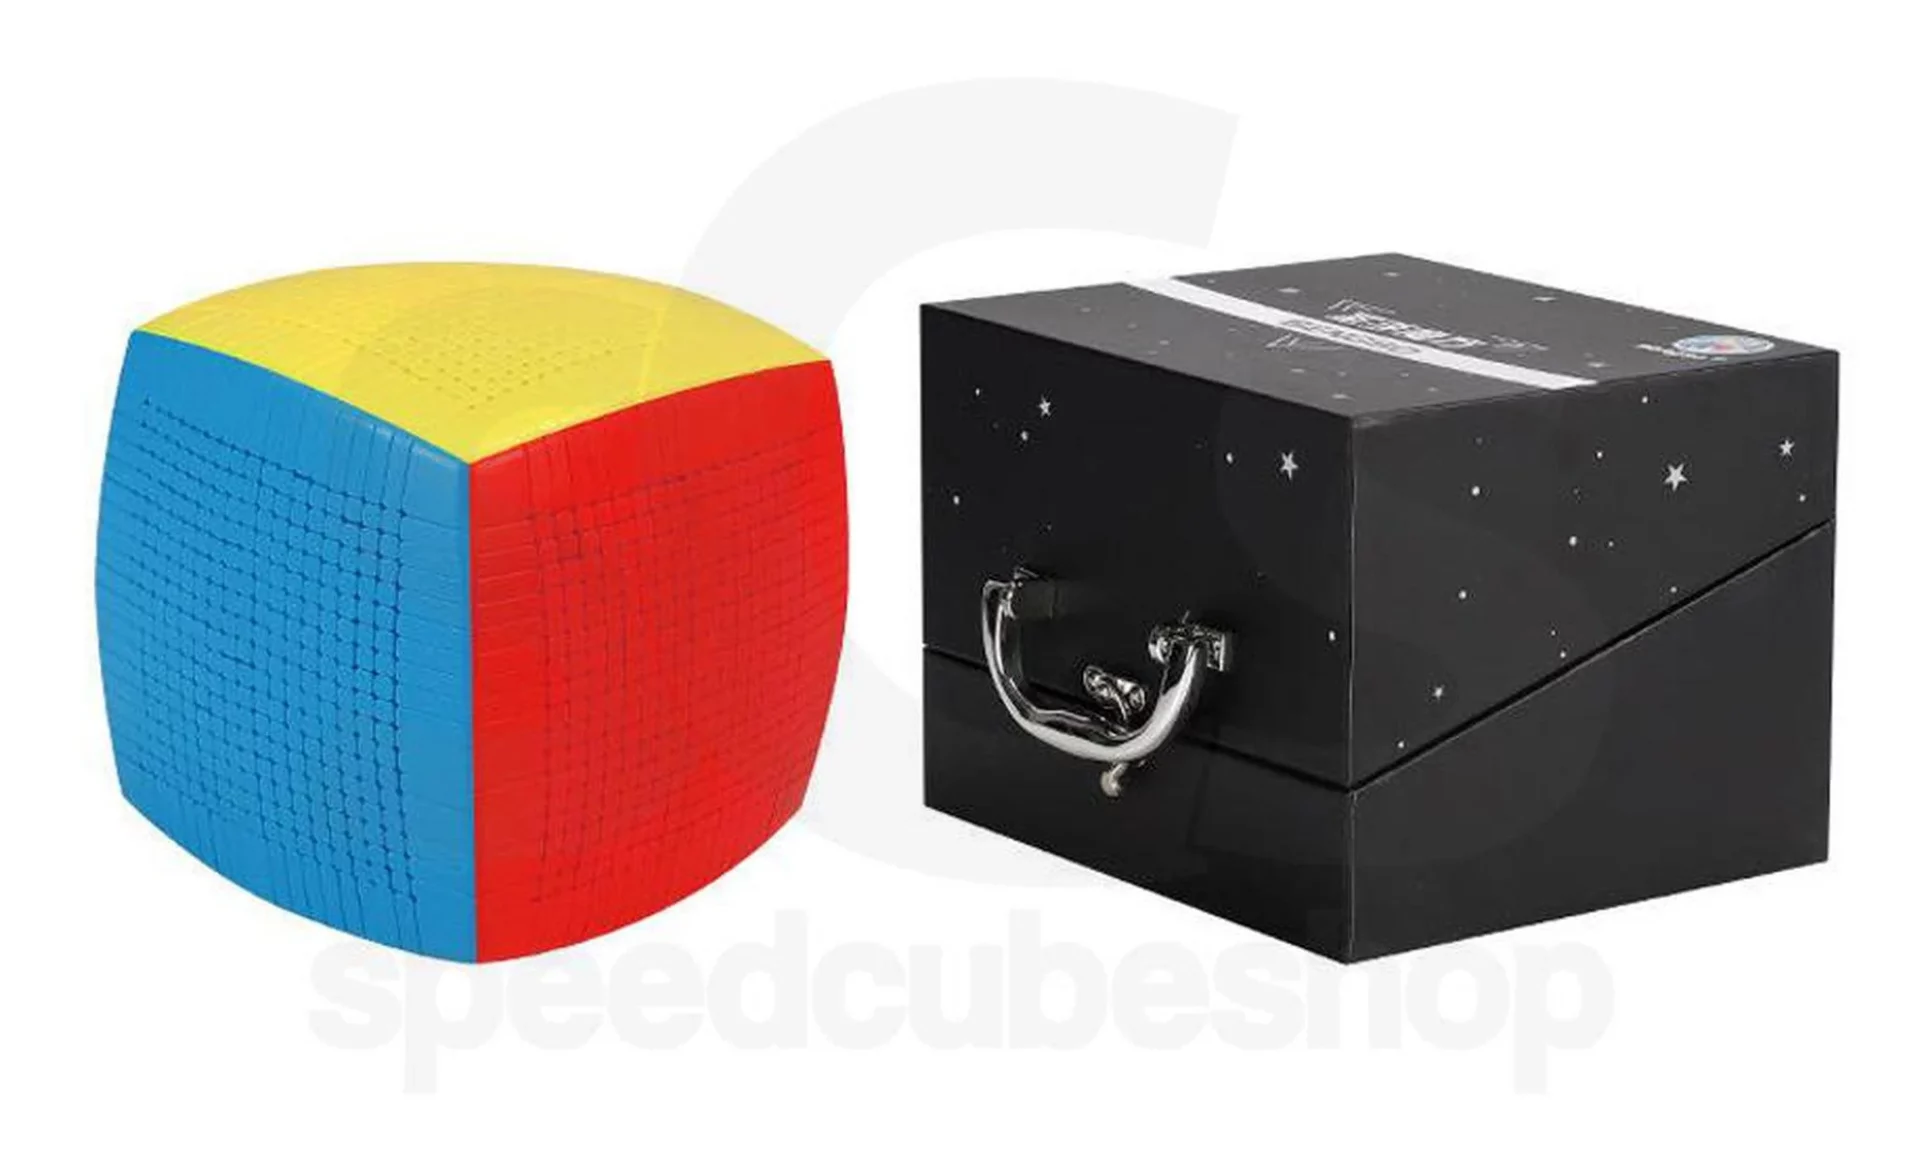 ShengShou 19 x 19 Rubik's Cube